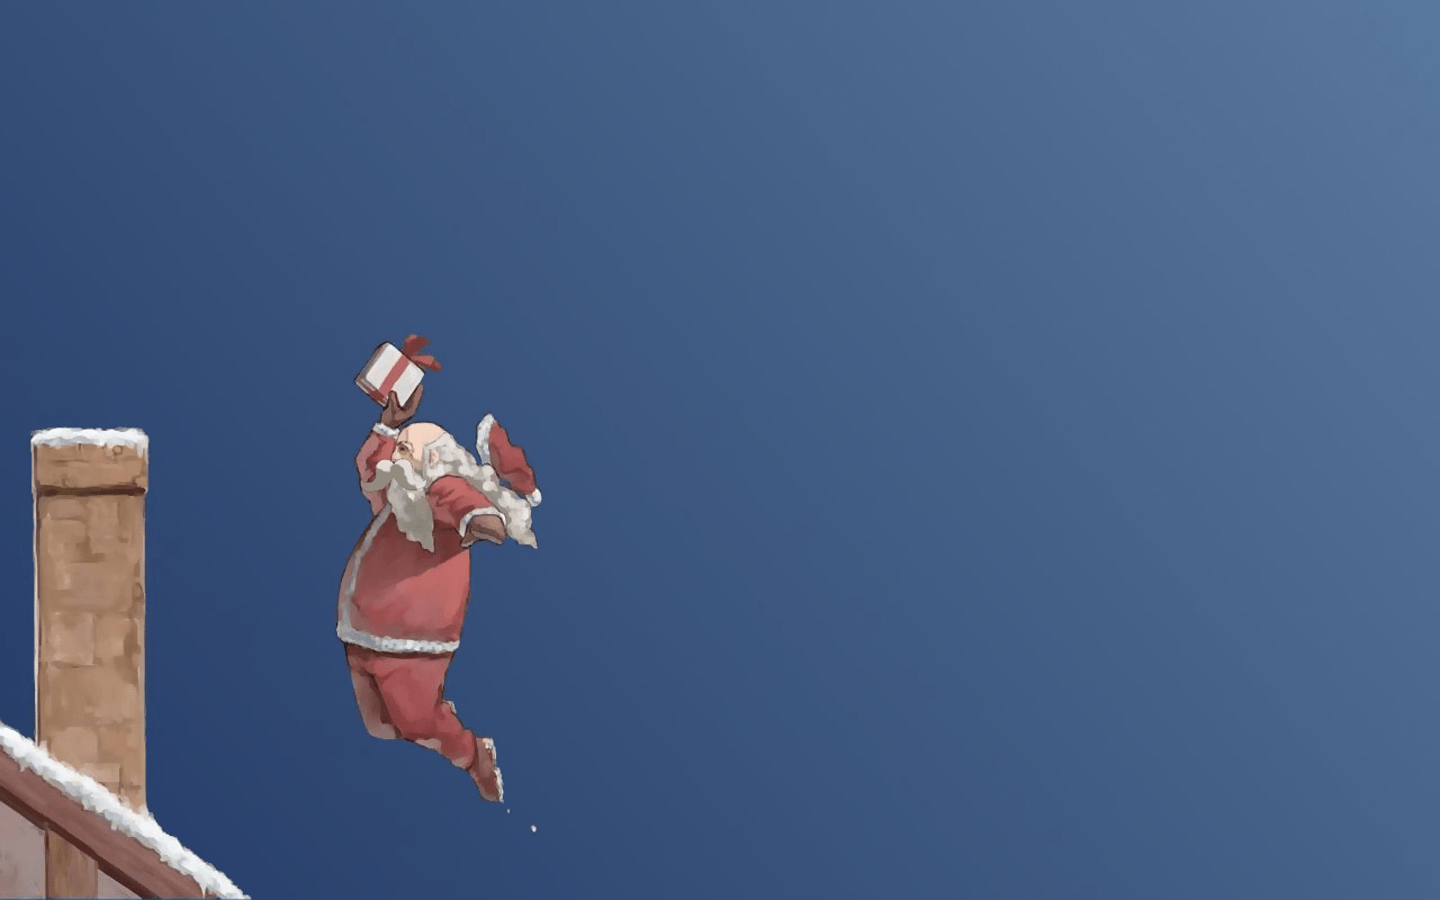 Free download Funny Christmas Wallpaper Jumping Santa Claus